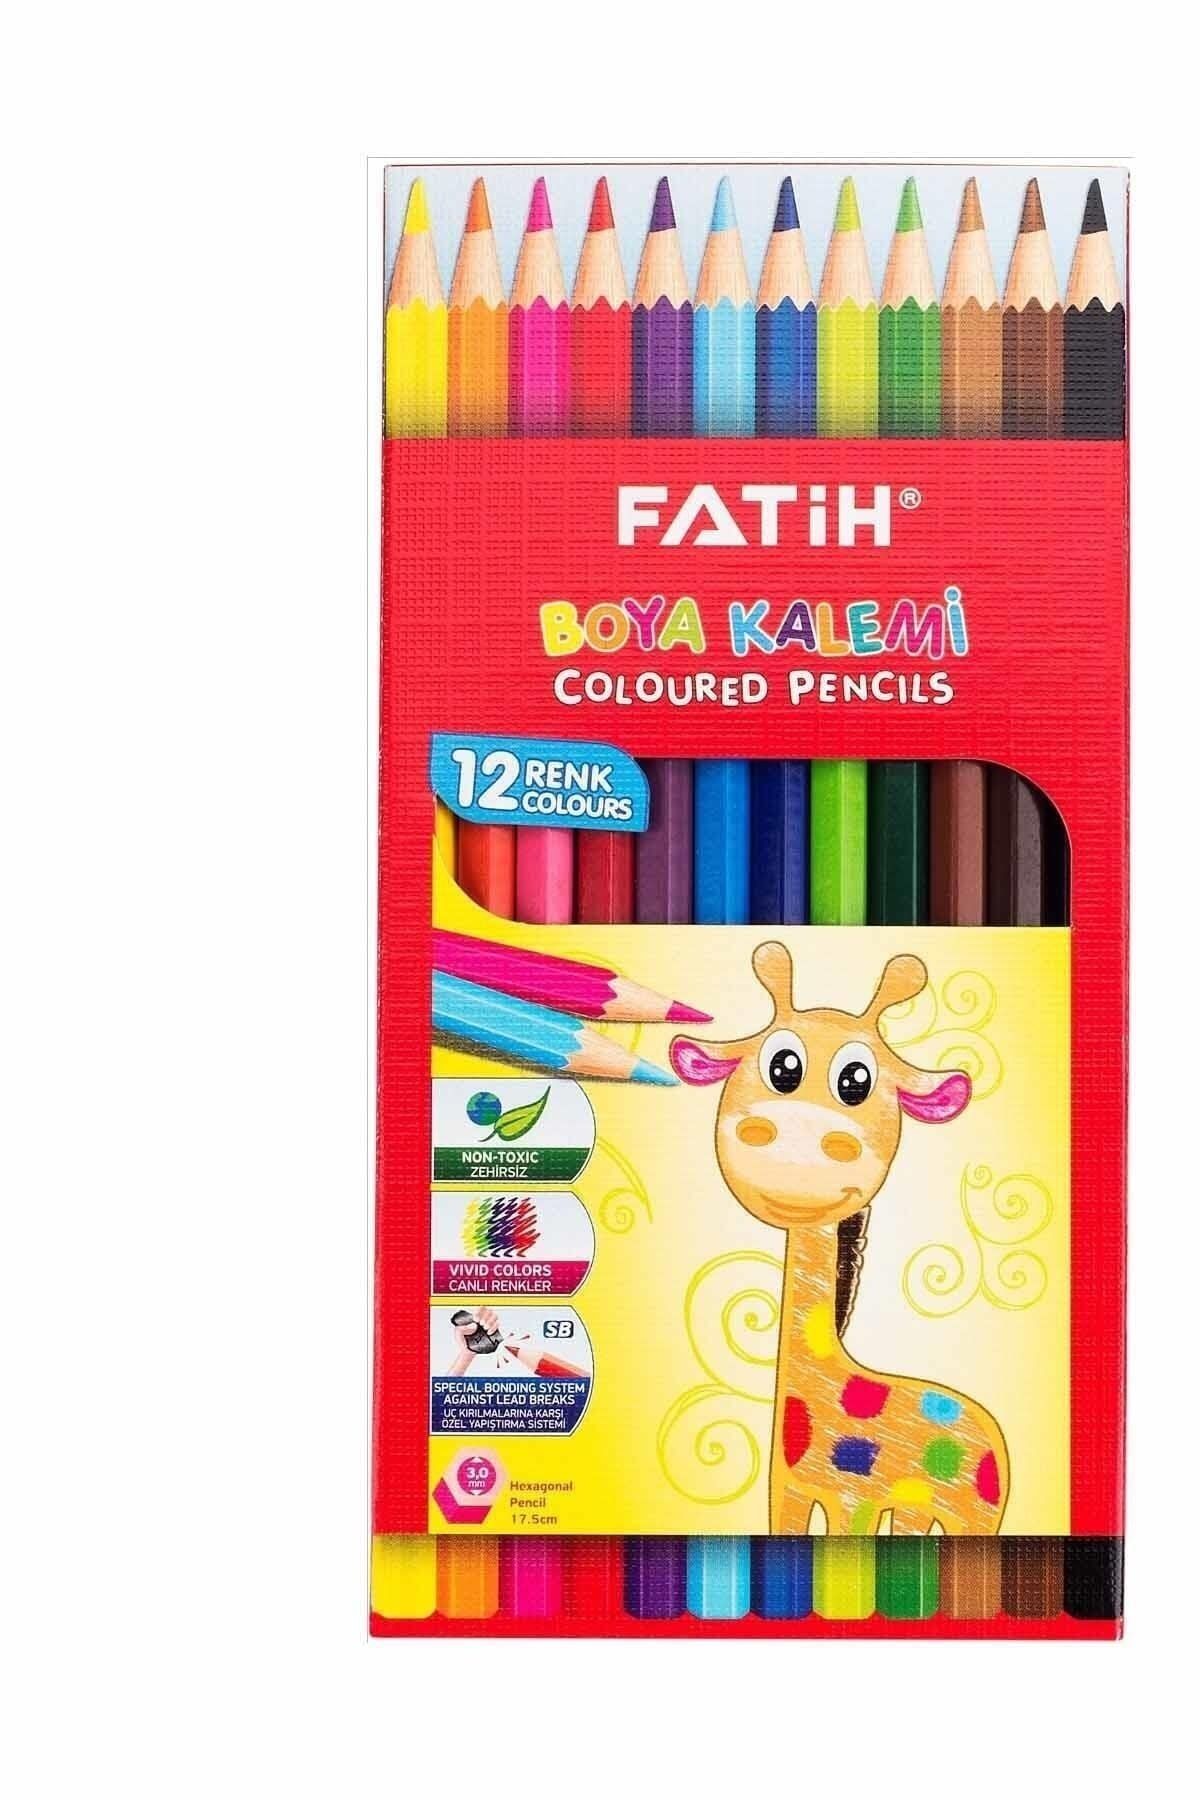 Fatih Fatıh Boya Kalemı 12 Renk Uzun